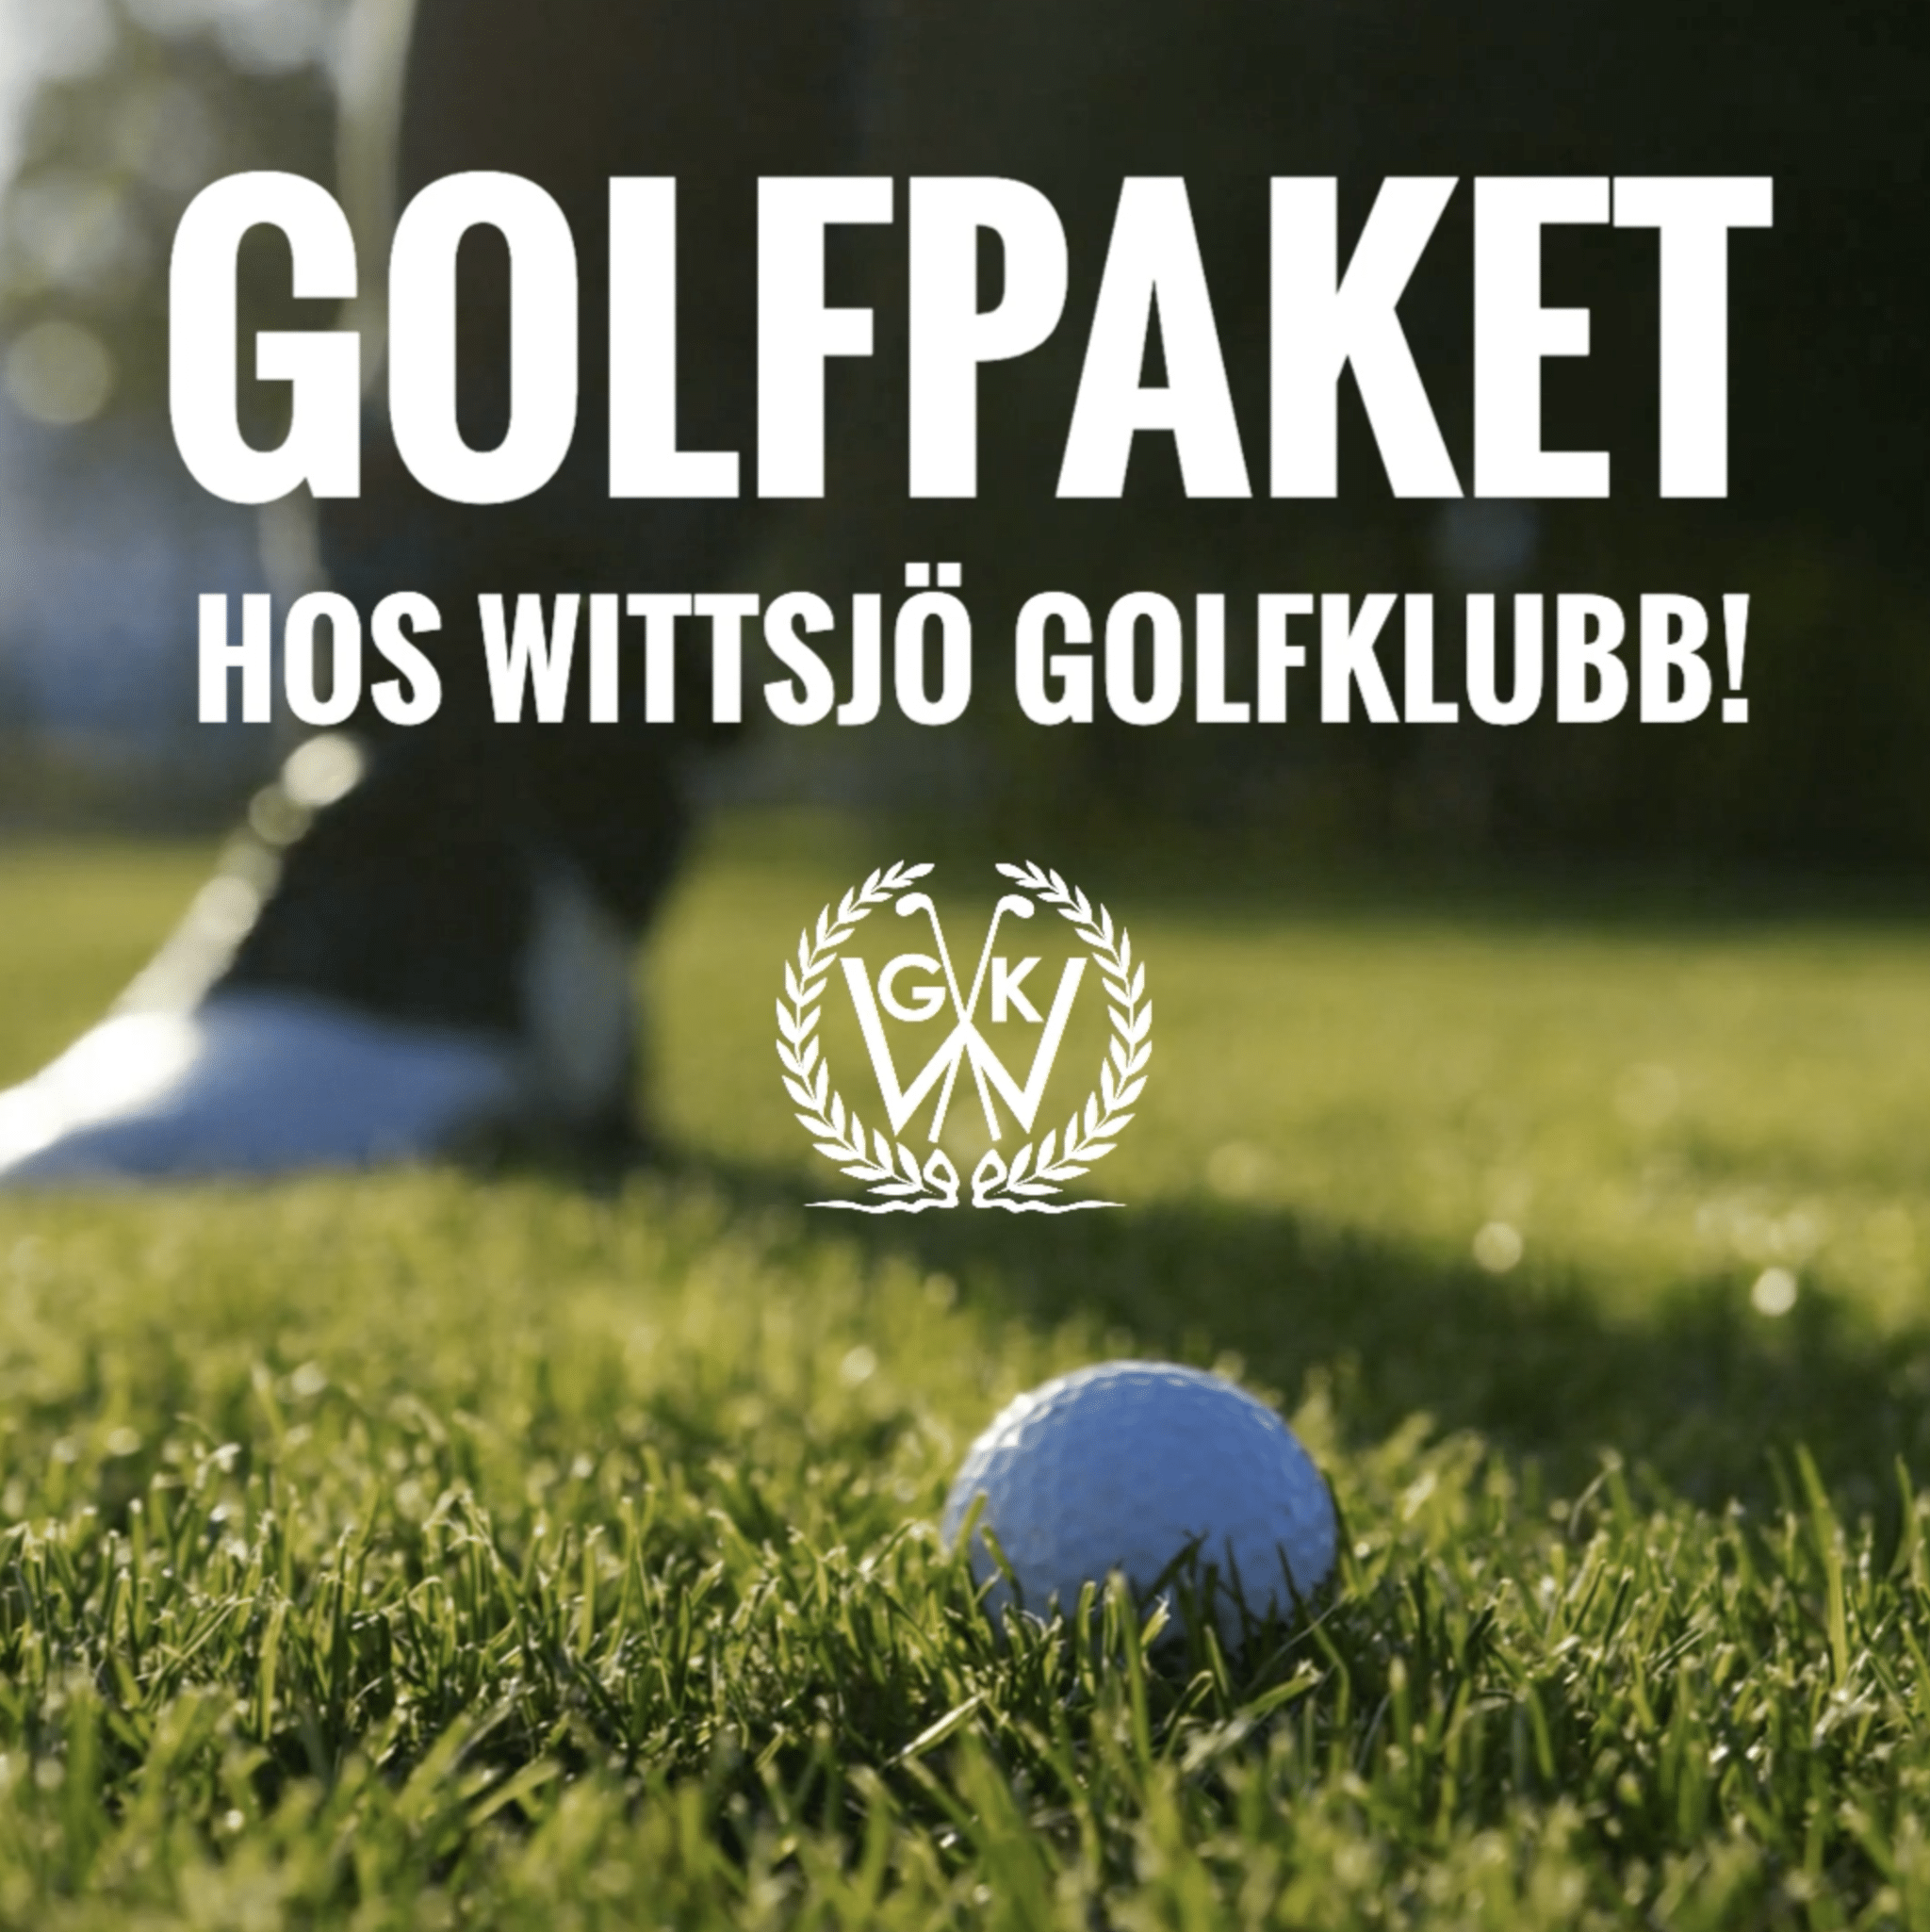 Golfboll på Wittsjö Golfklubbs gräs.